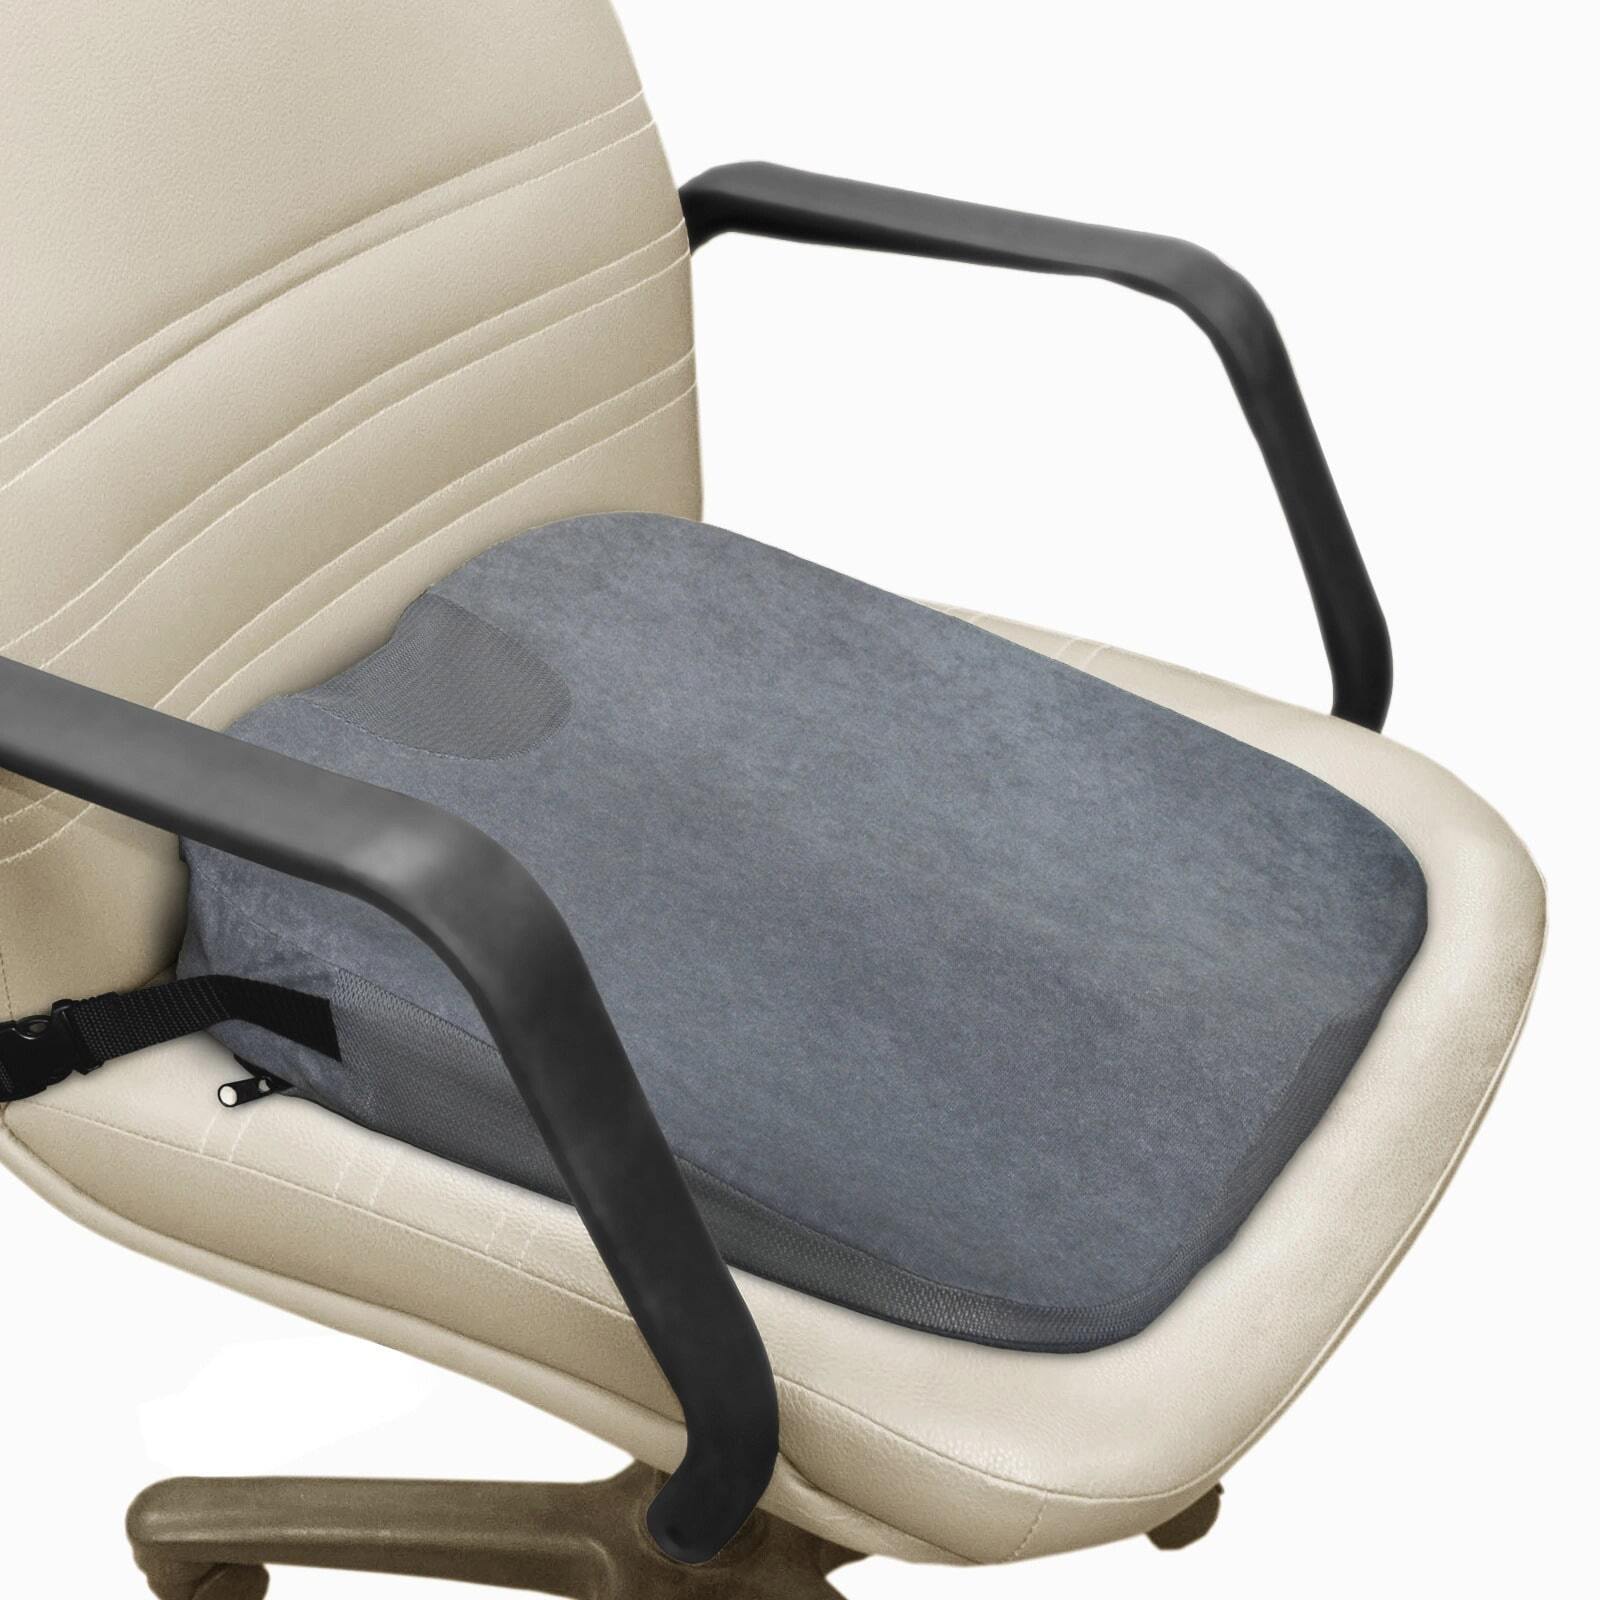 Как выбрать правильную ортопедическую подушку для сидения?